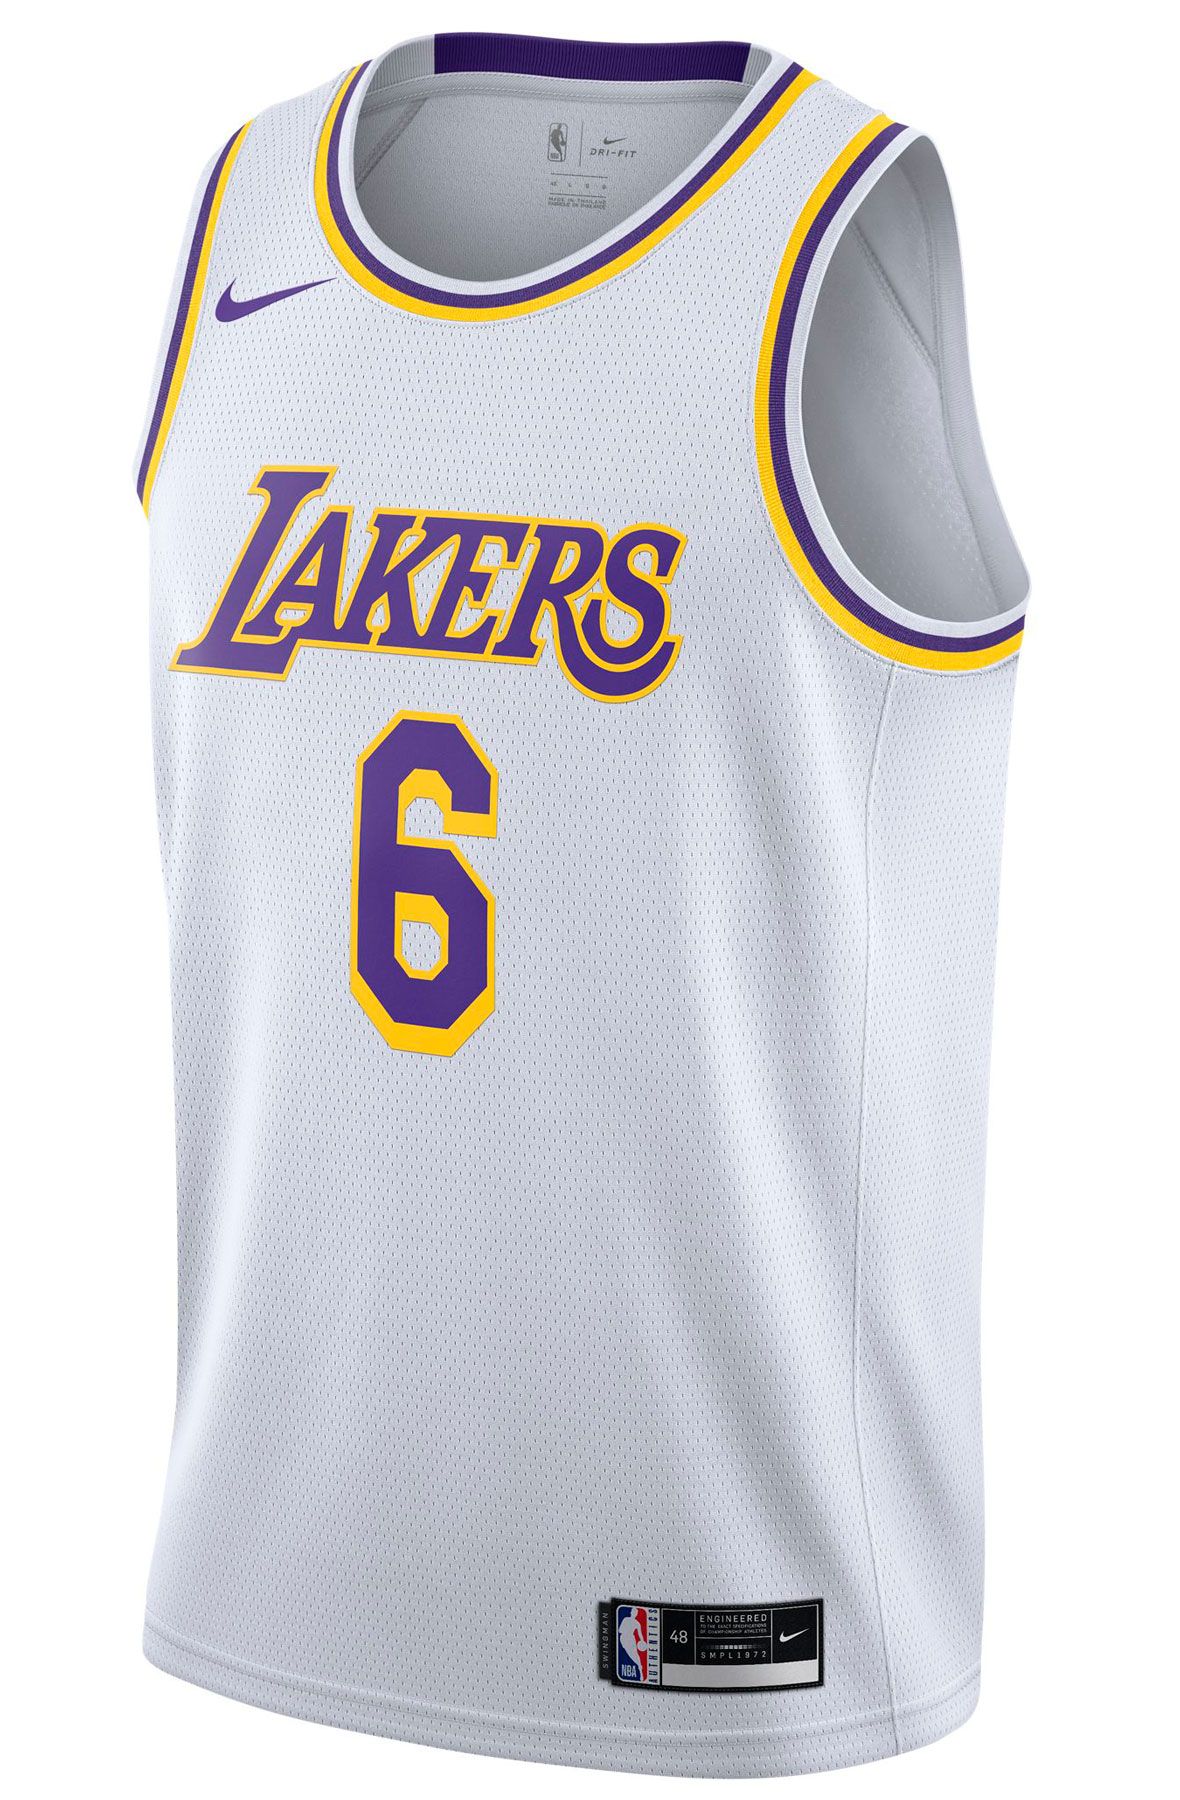 2010 NBA Champions Lakers Adidas Tee XL